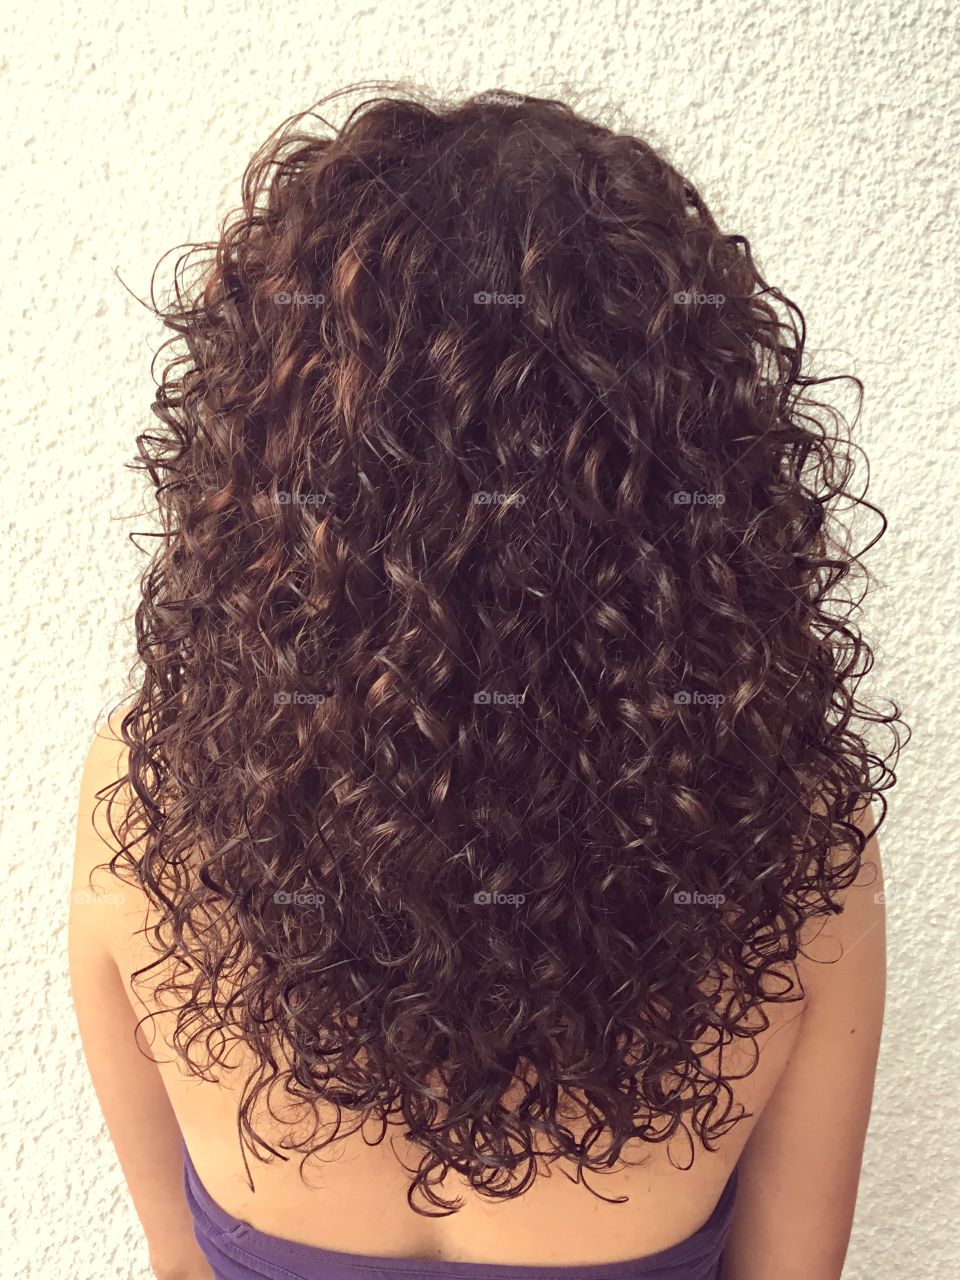 Curly hair on girl